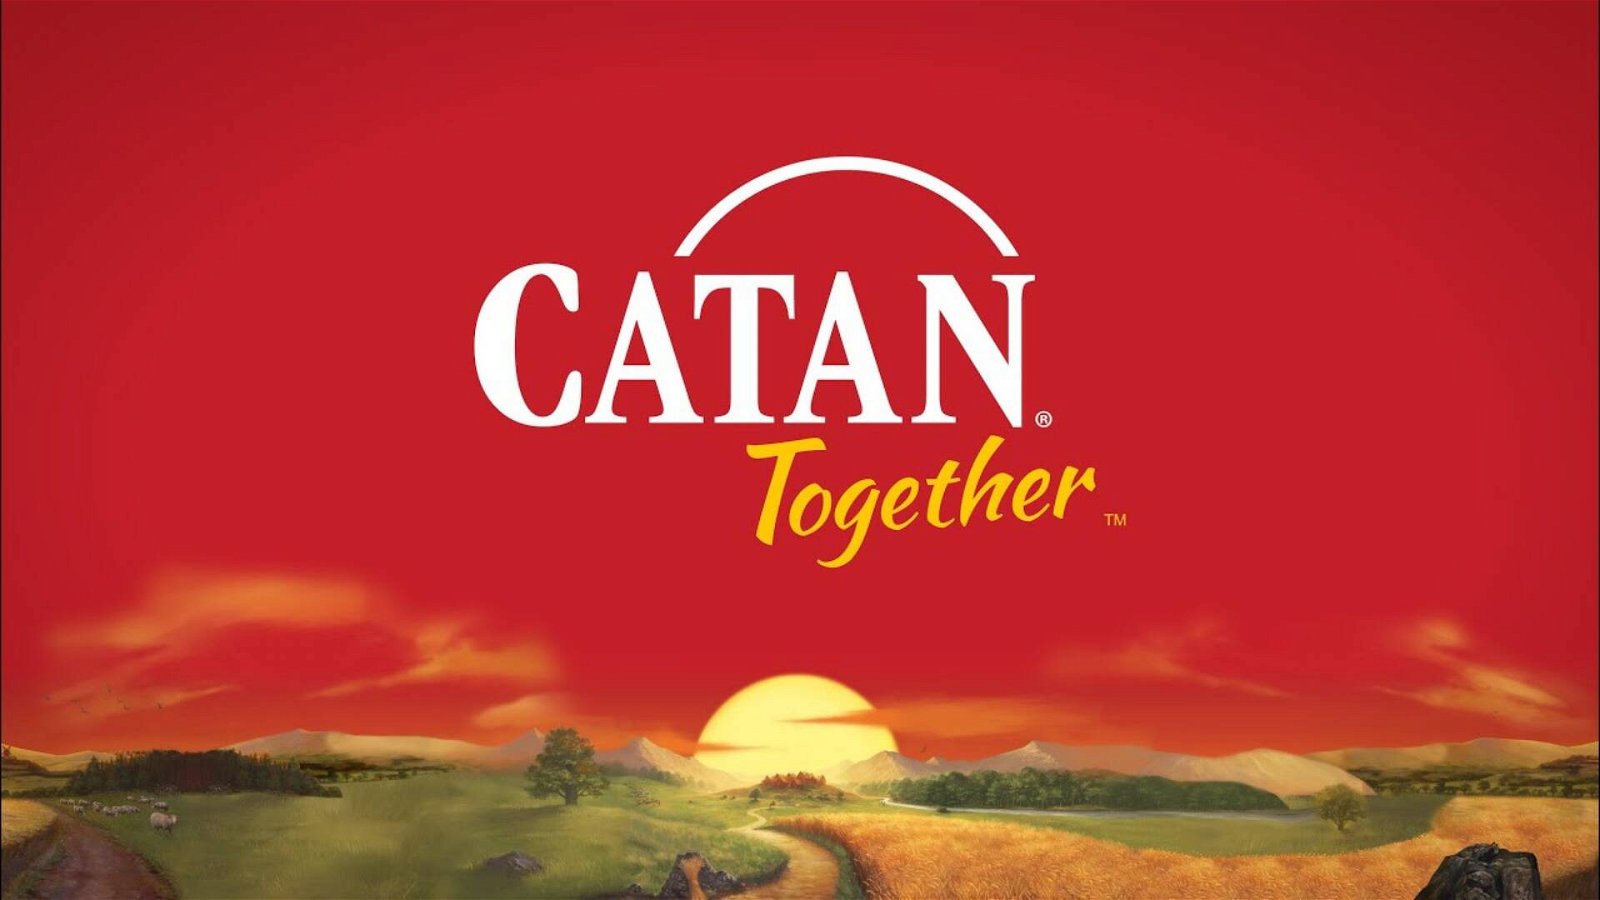 Immagine di Catan 25th Anniversary Edition in vendita a Novembre